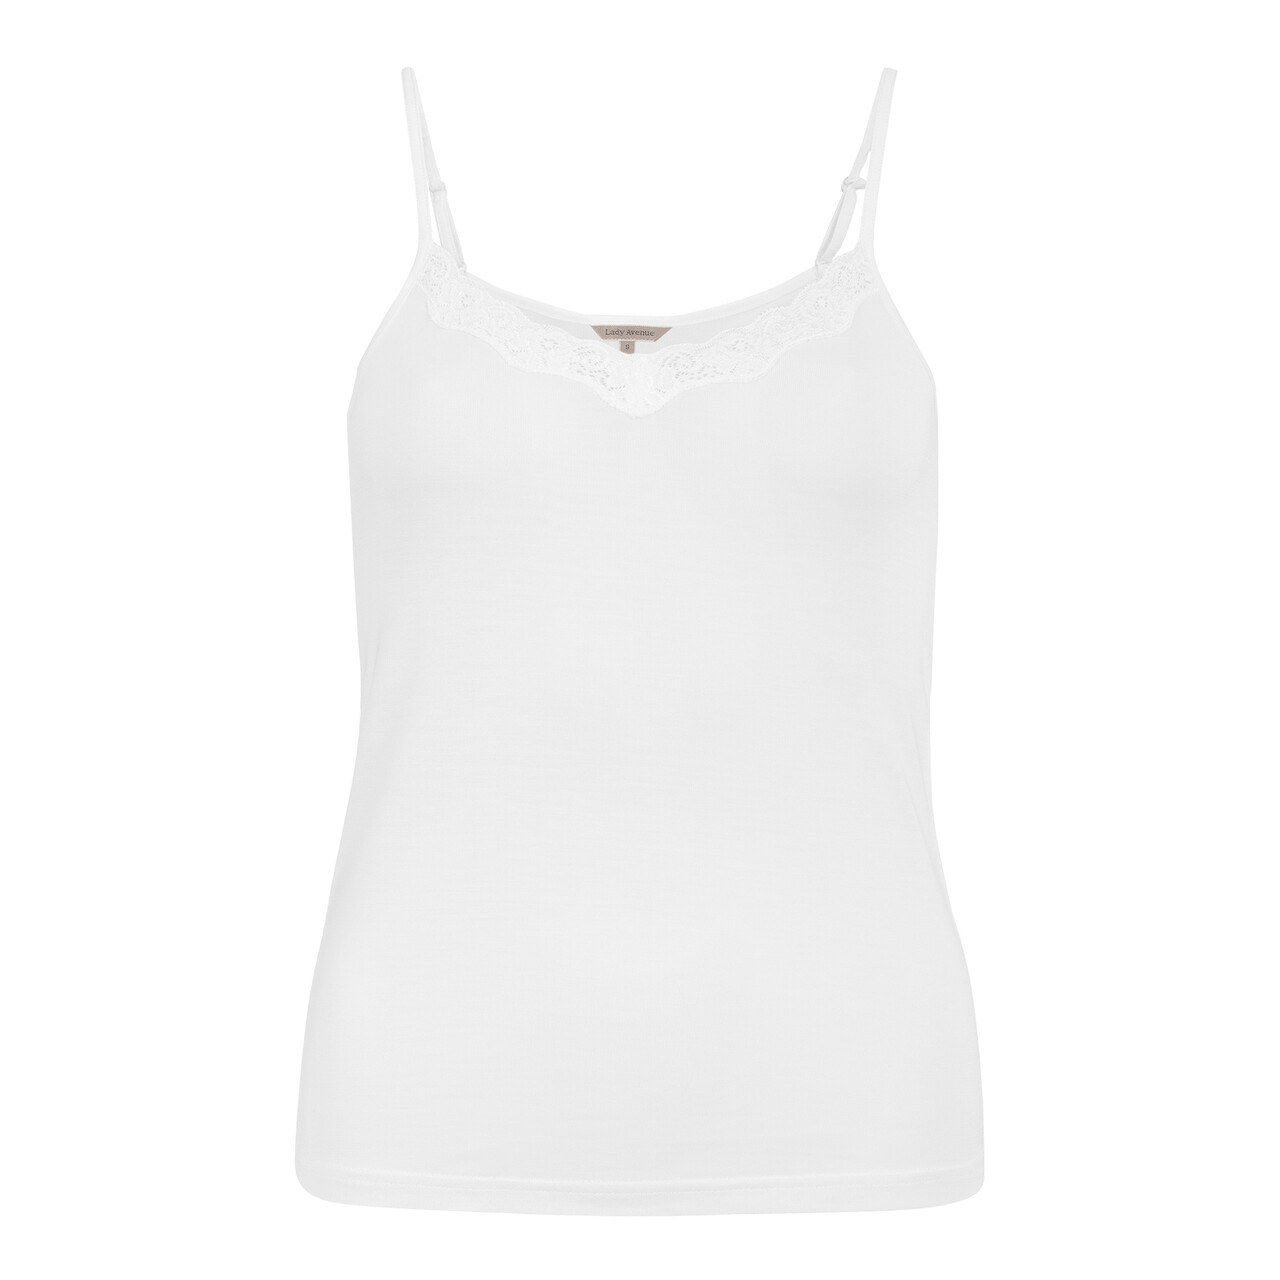 Se Lady Avenue Silk Jersey Camisole Top, Farve: Hvid, Størrelse: M, Dame hos Netlingeri.dk